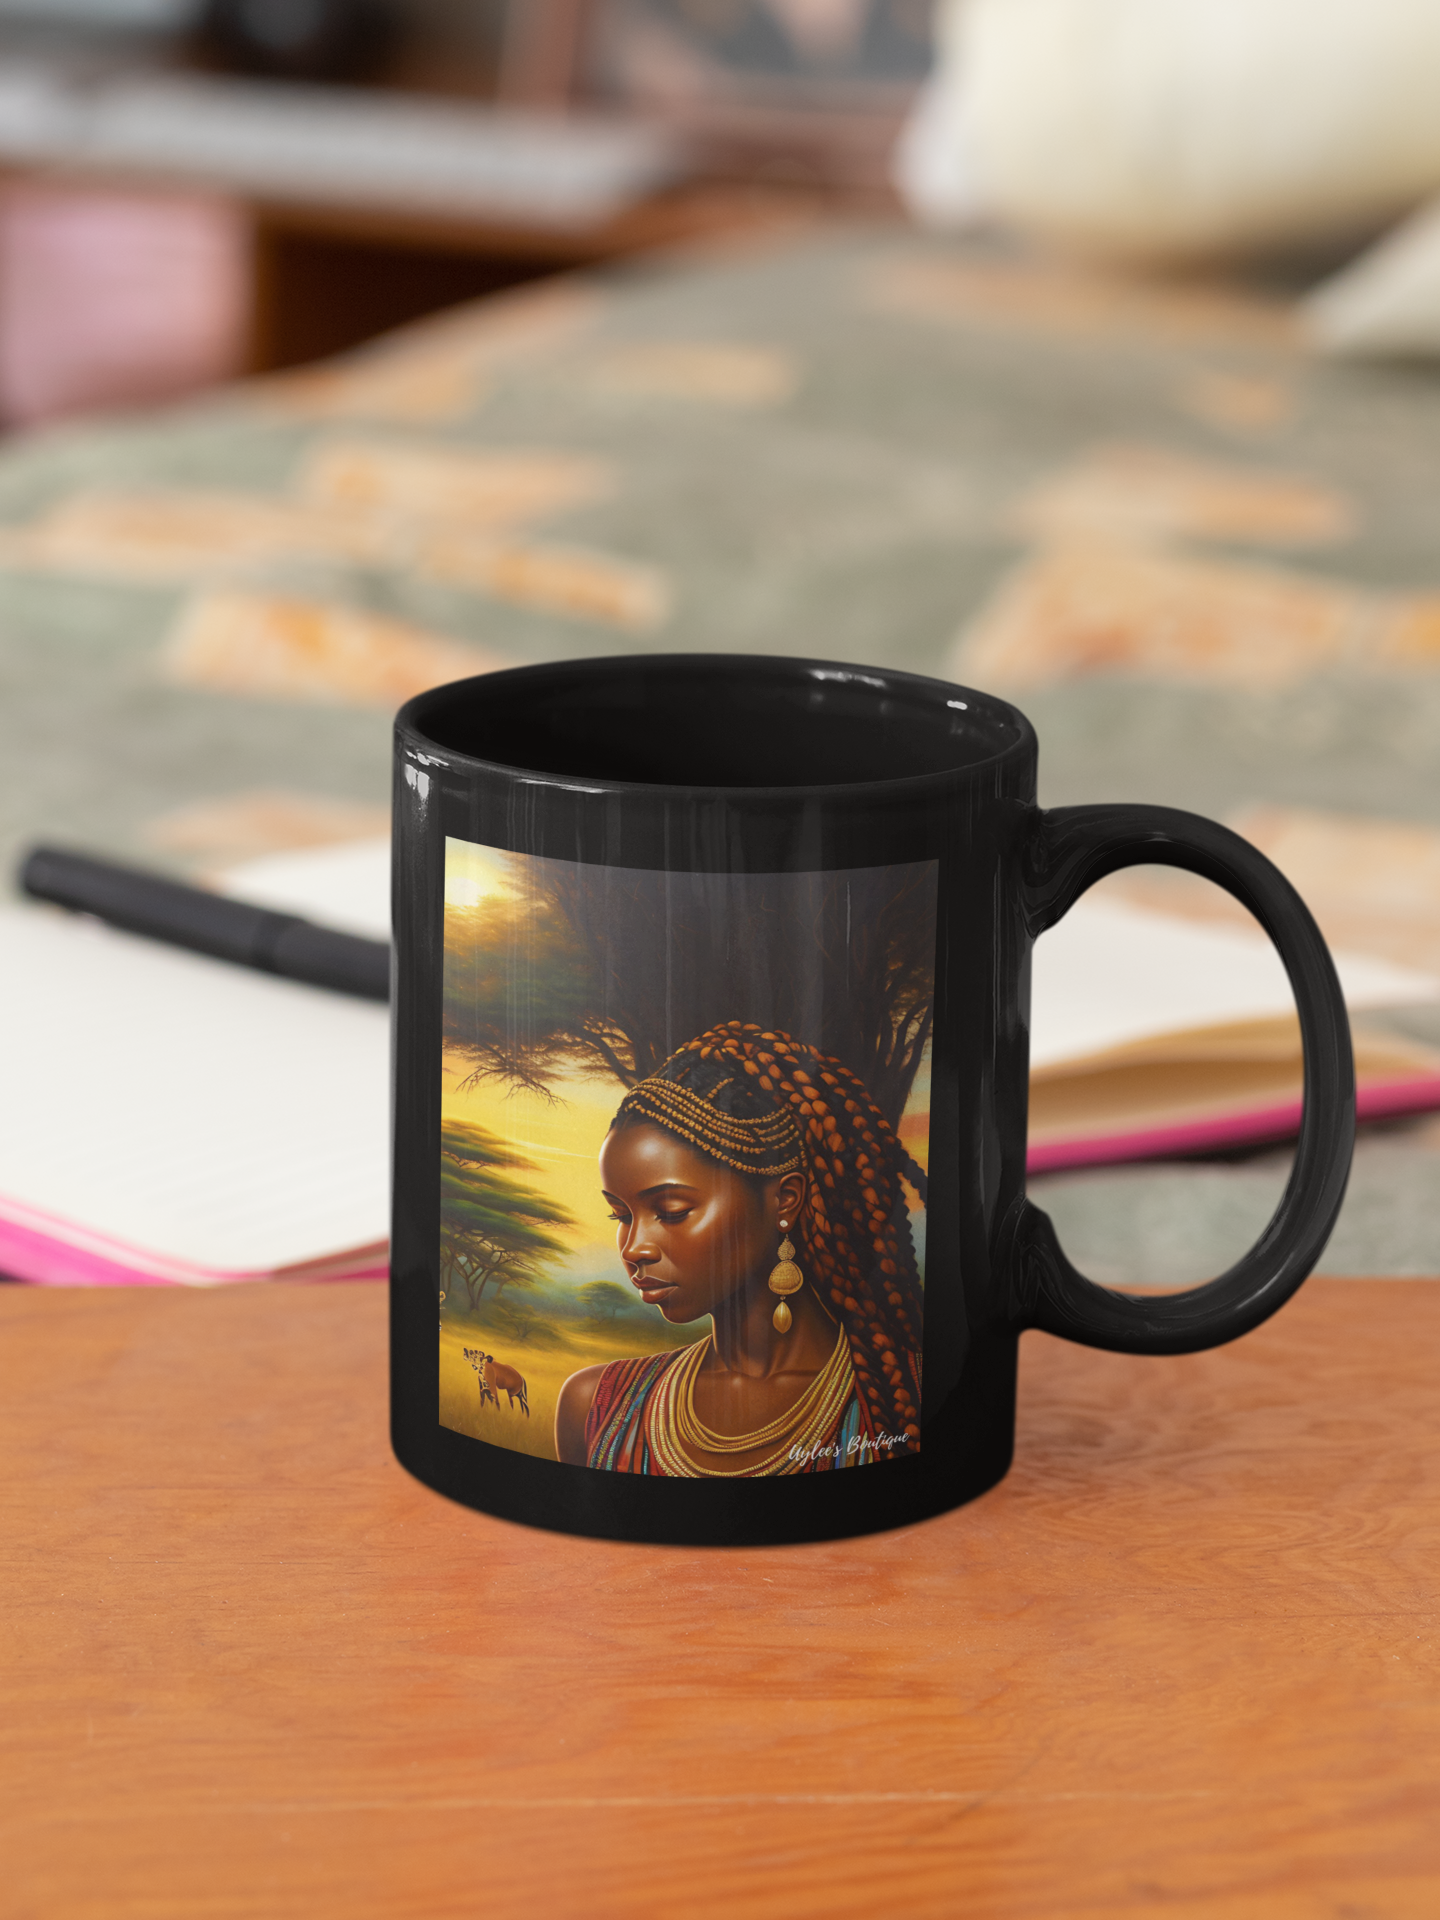 Beautiful Ceramic Custom Mug - African Woman in Jungle